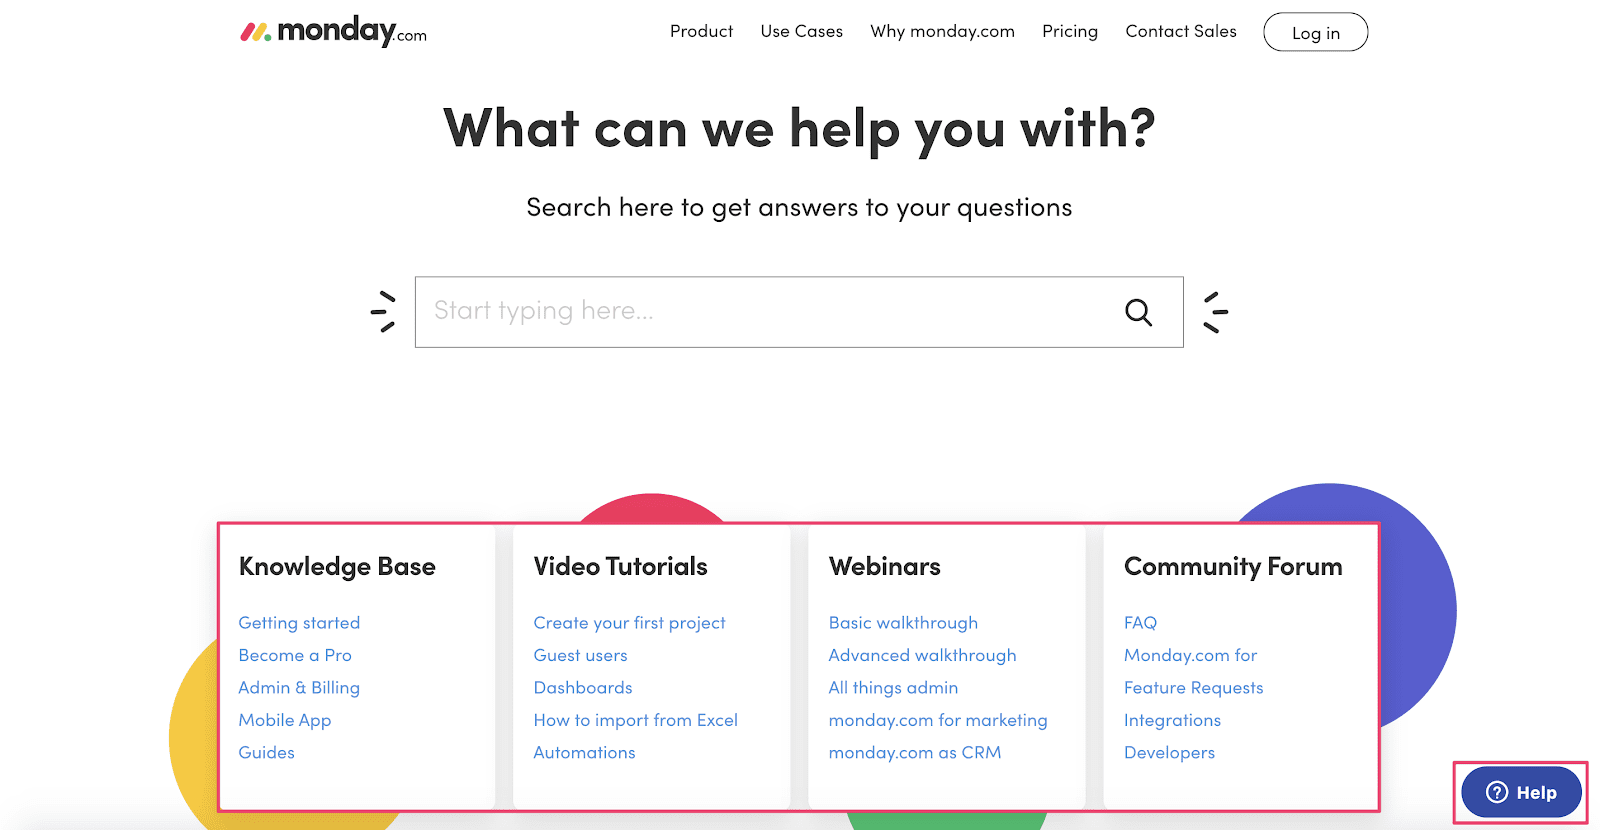 Monday.com's Help Center